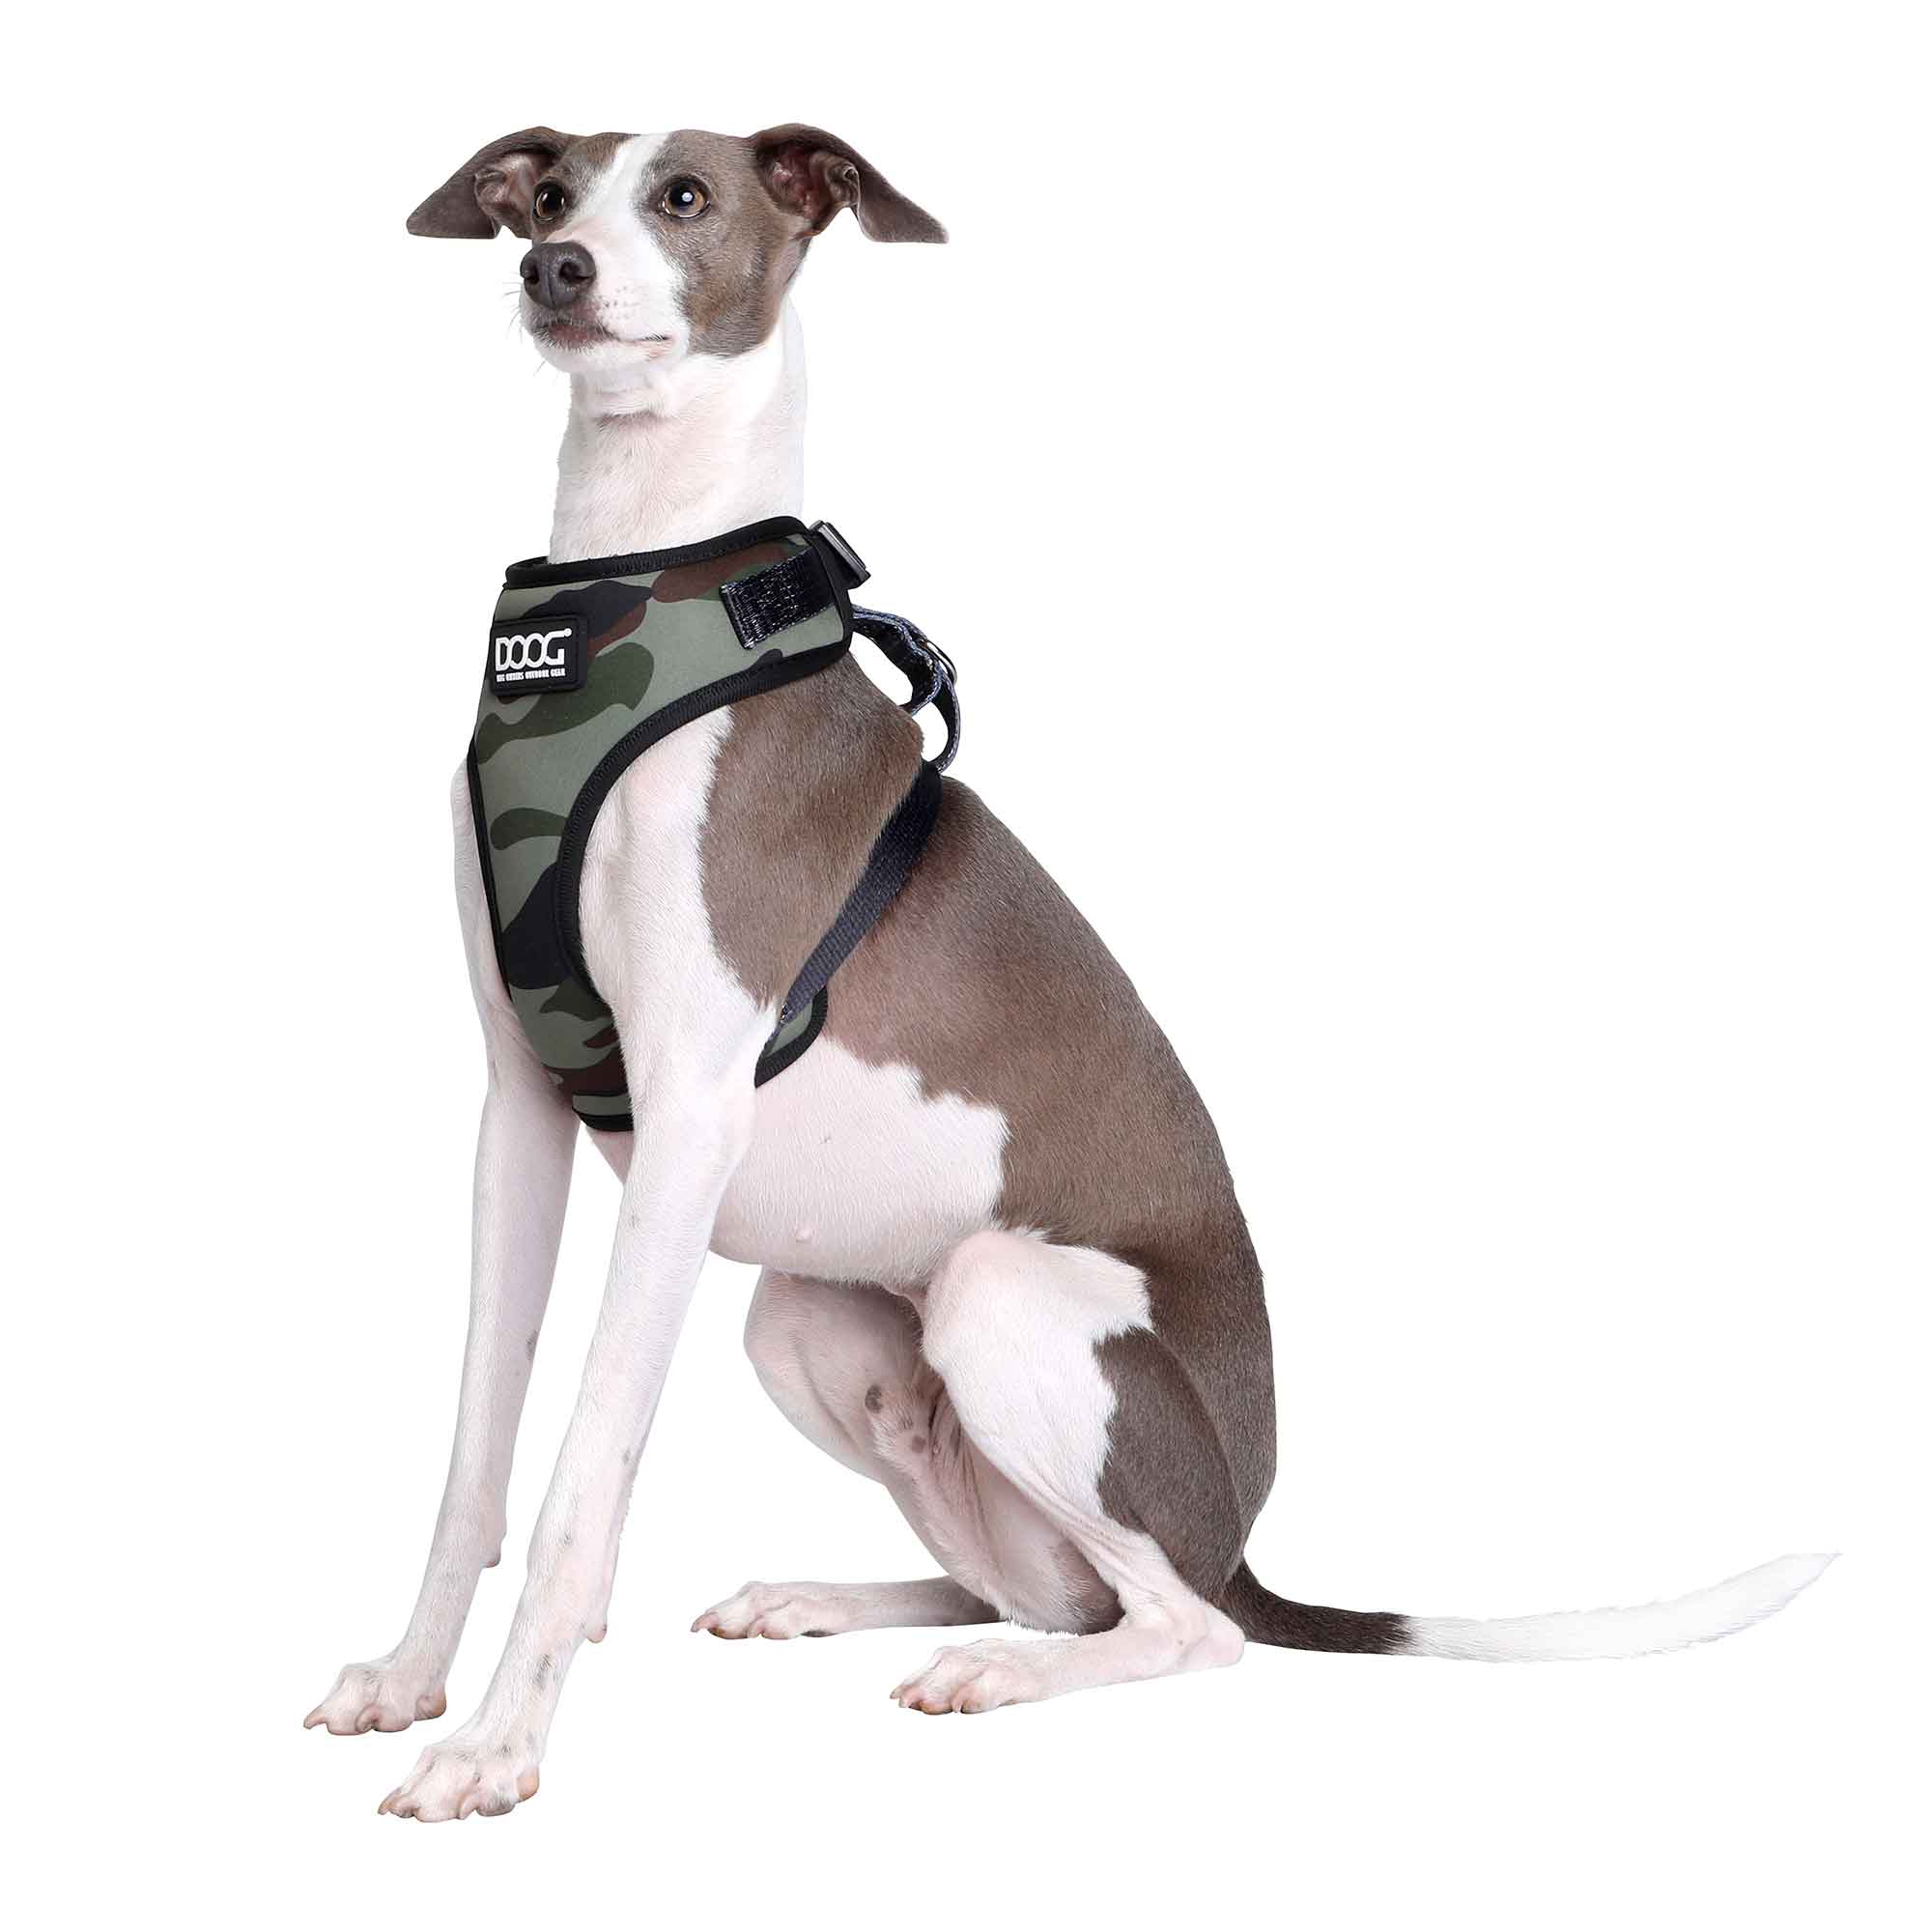 DOOG Neoflex Dog Harness Bruiser Extra Small Camo